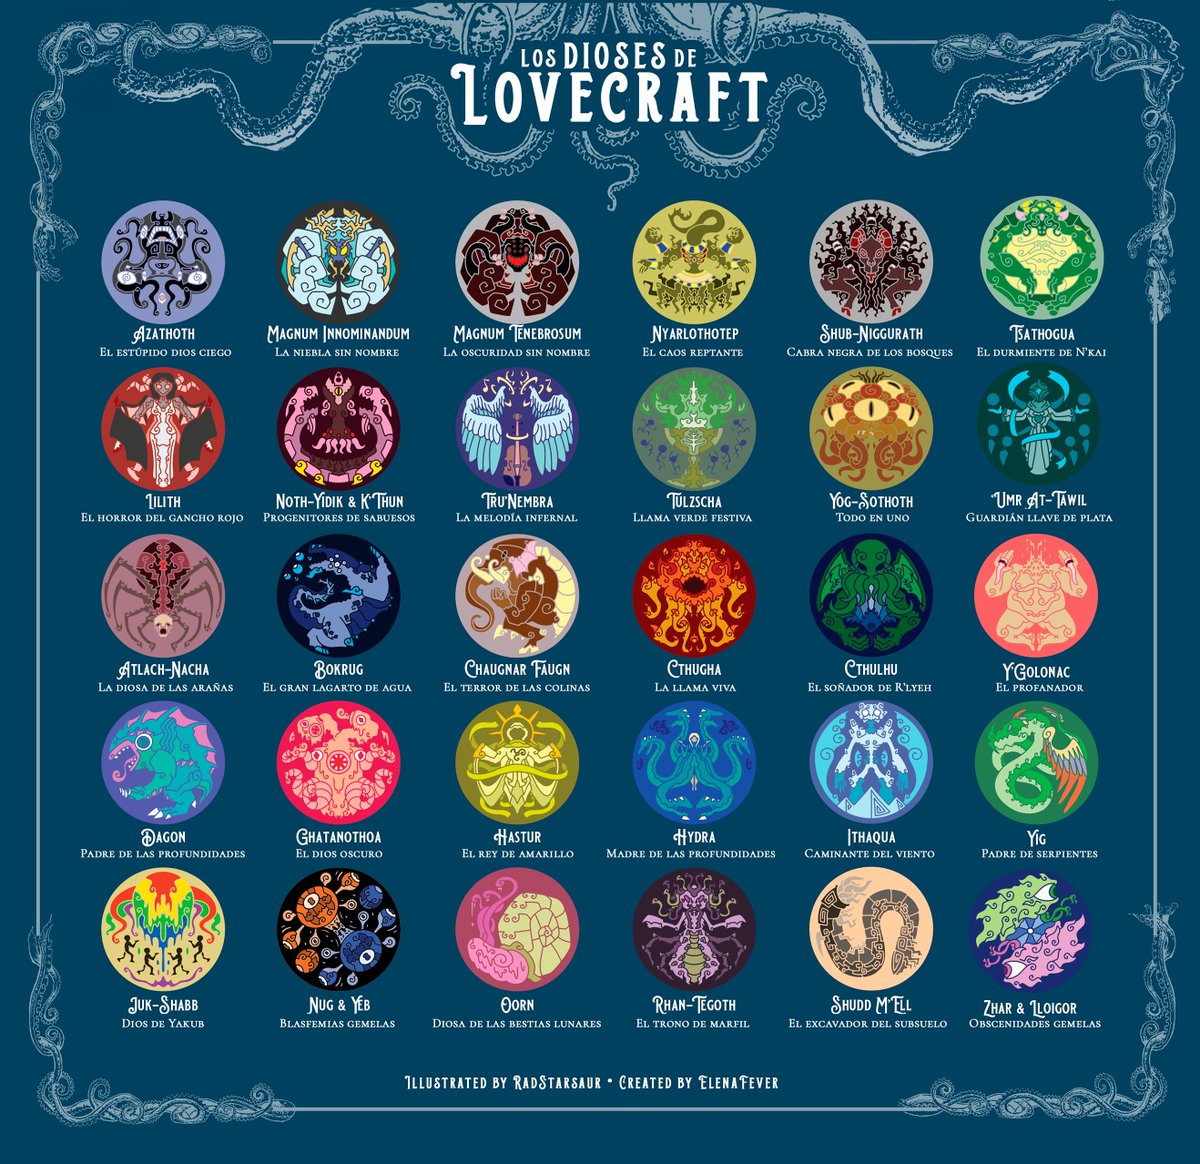 Guía con las deidades míticas de Lovecraft que he adaptado y traducido 🐙